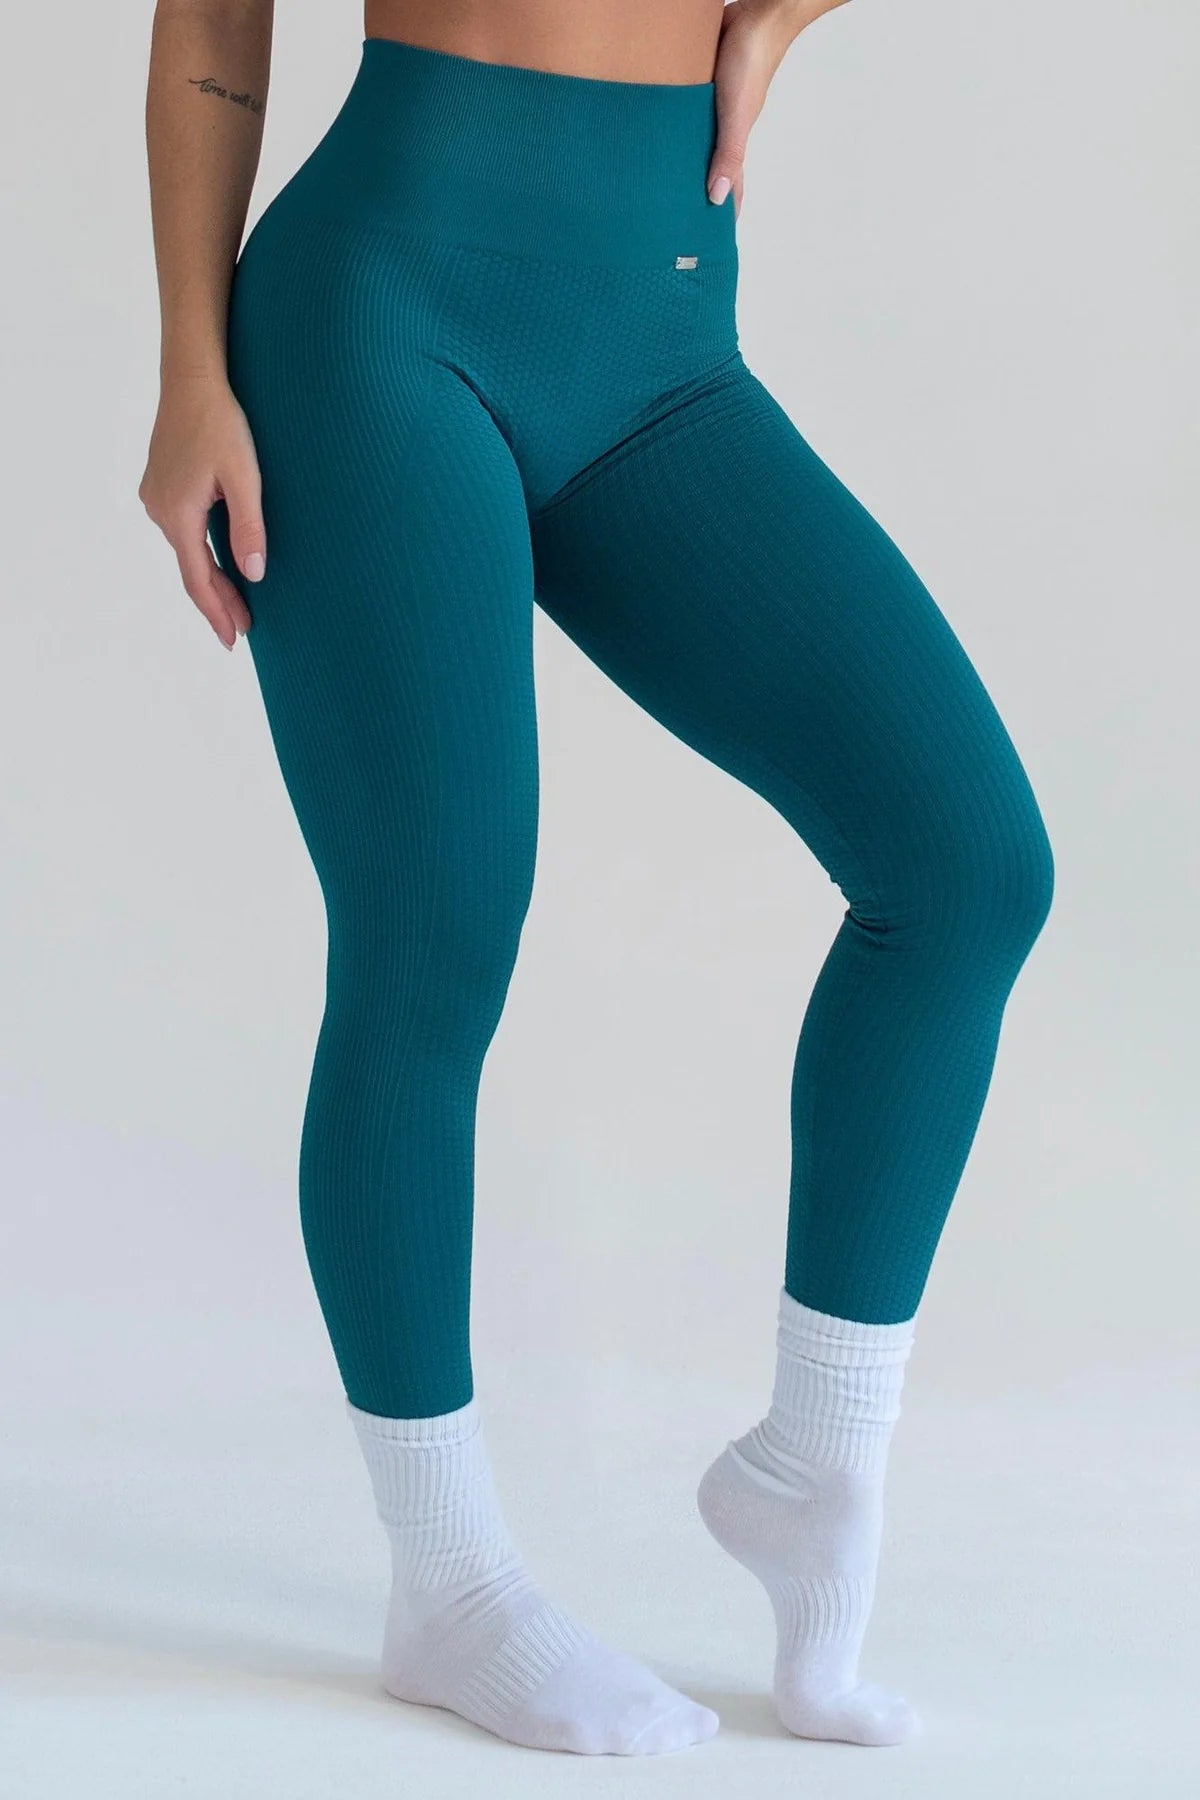 
                  
                    Pantalones Flow Legging 4.0 - Verde Aqua
                  
                